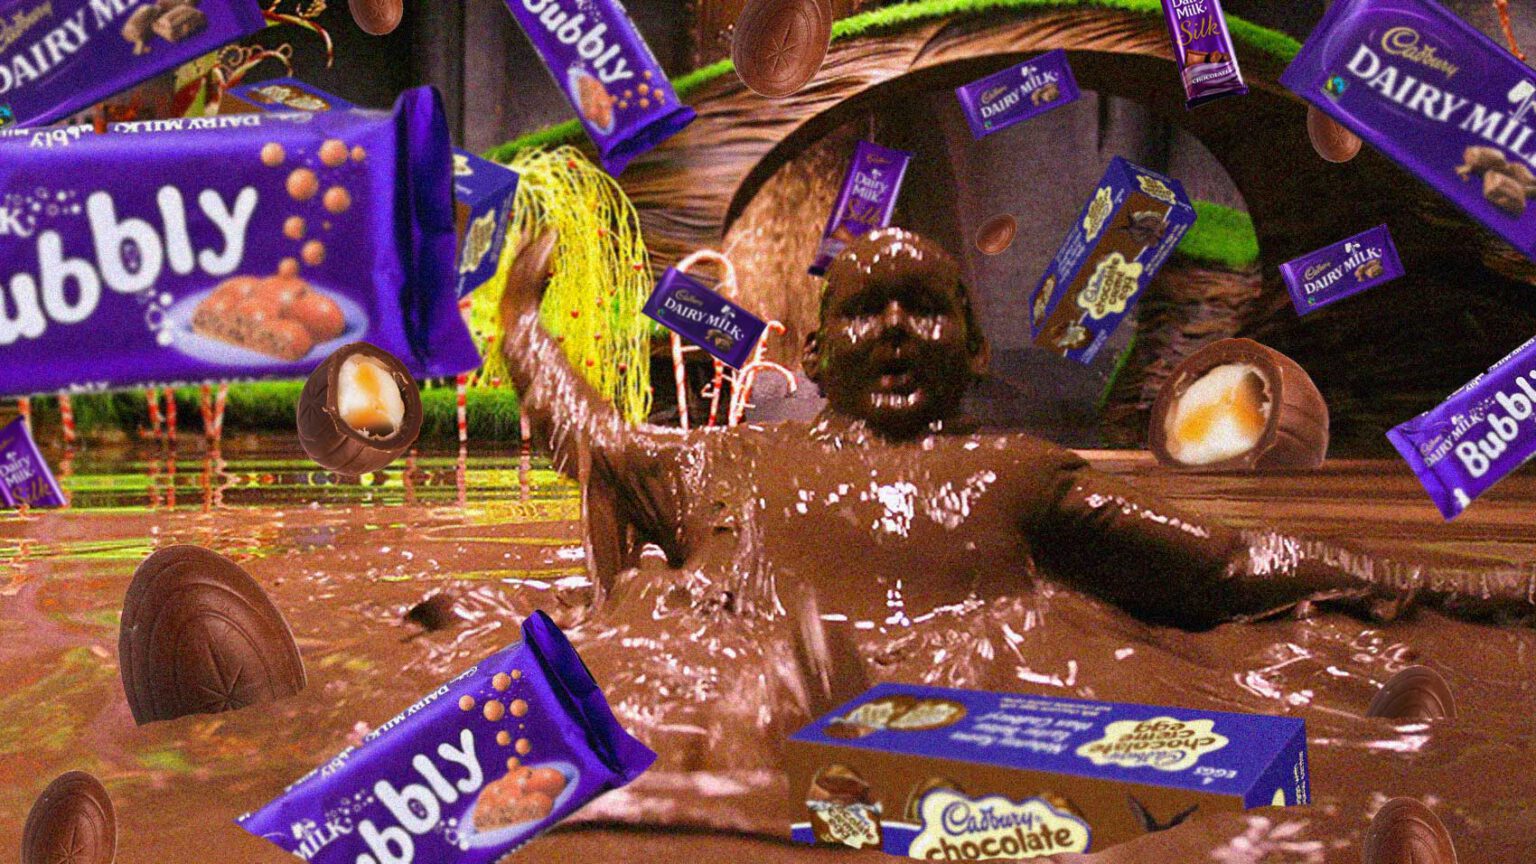 Cadbury is Hiring Part-Time Chocolate Tasters.